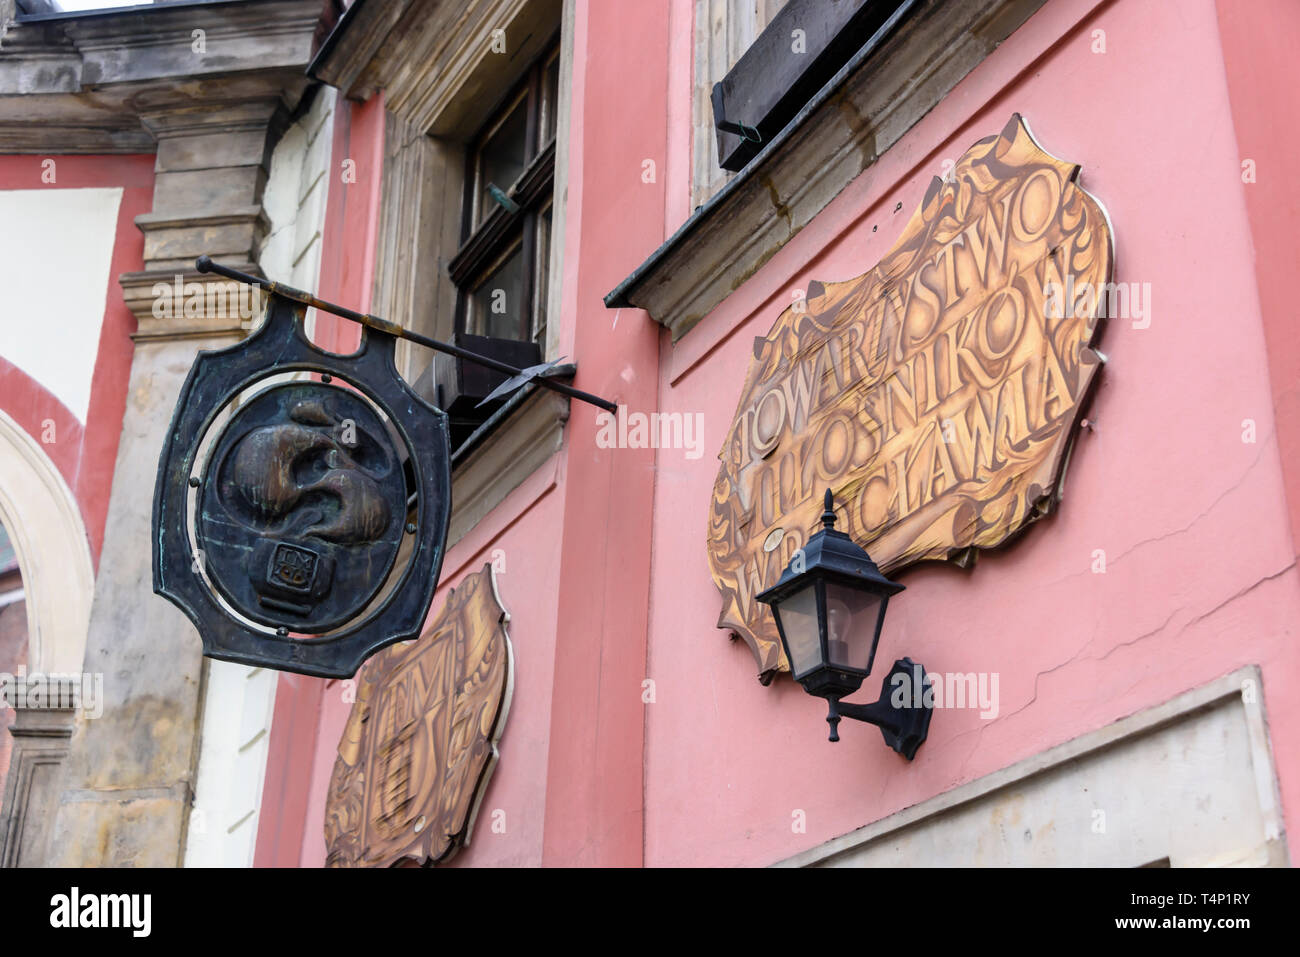 Gusseiserne Plakette und gemalte Zeichen außerhalb eines sehr alten Pub, Breslau, Breslau, Wroclaw, Polen Stockfoto